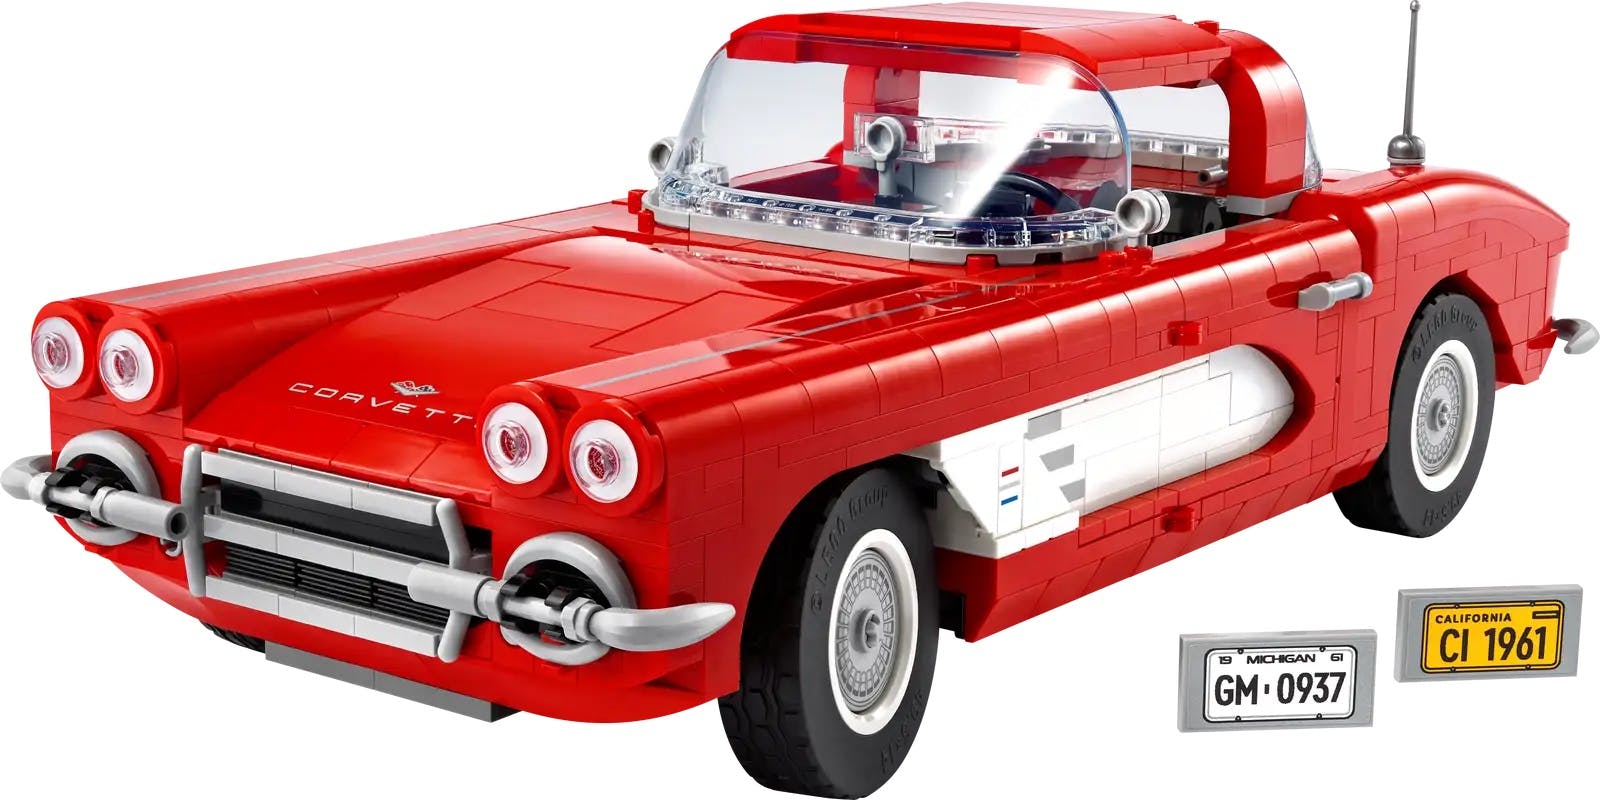 1961 LEGO Corvette front plates